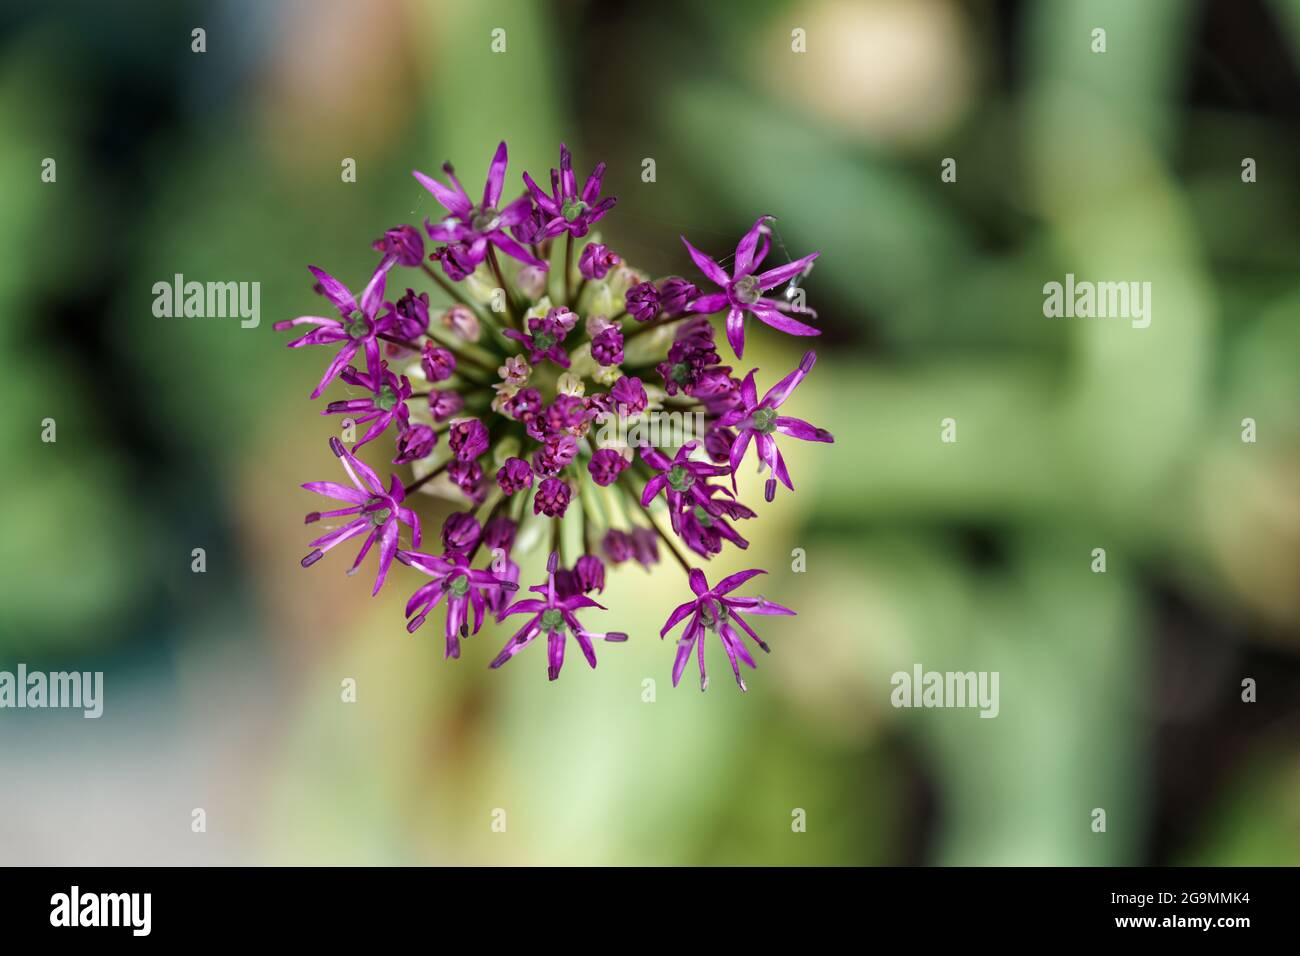 Nahaufnahme eines allium - Allium hollandicum - Blütenkopfes von oben Stockfoto